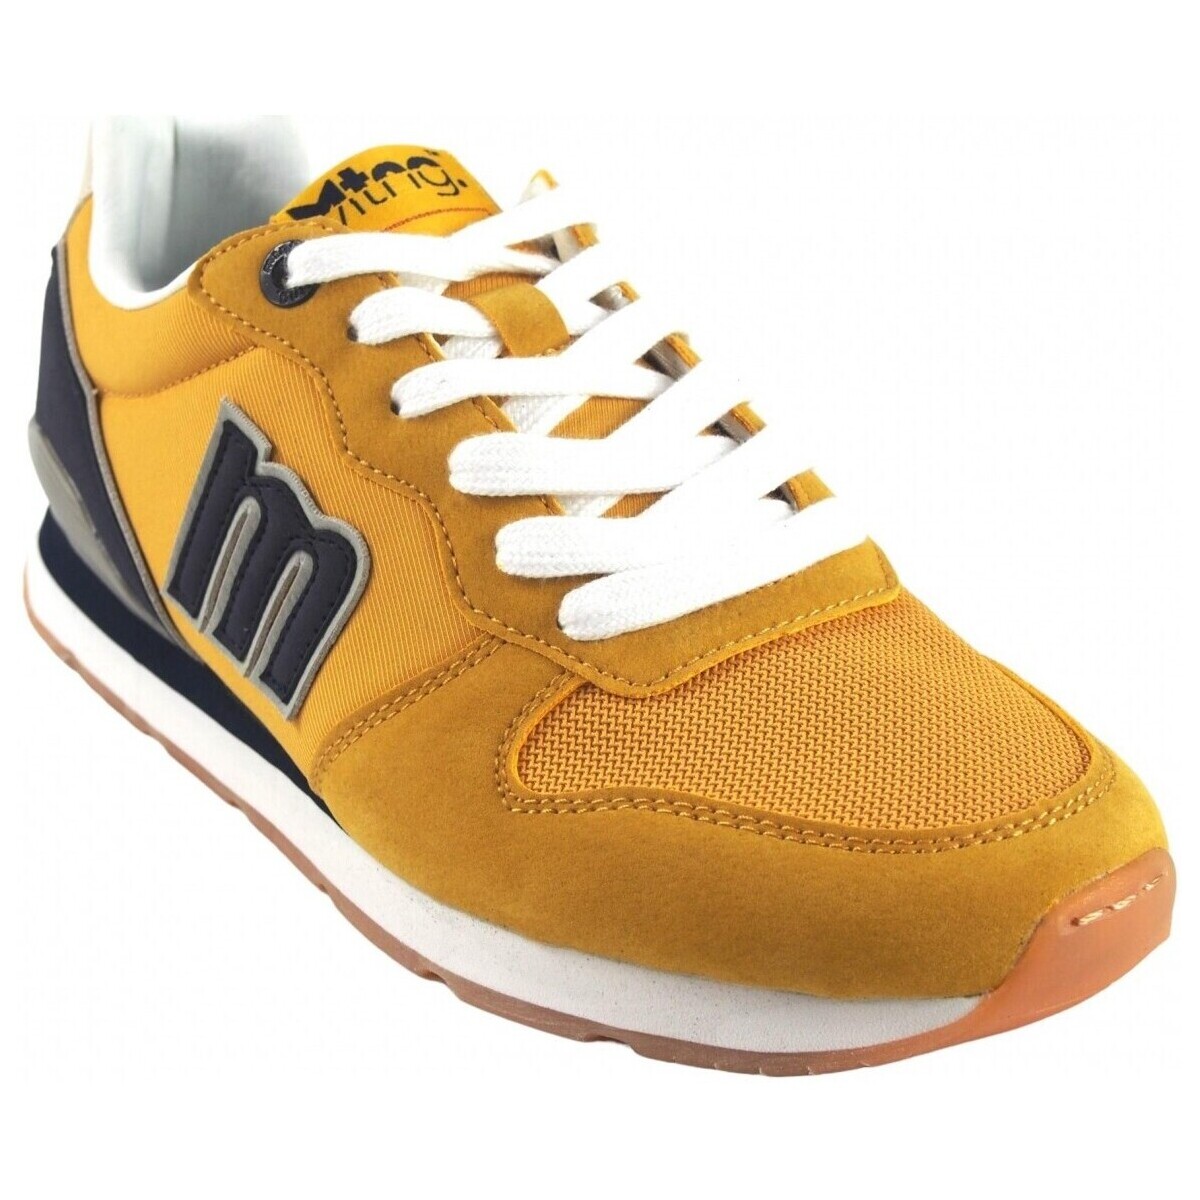 Sapatos Homem Multi-desportos MTNG Sapato masculino MUSTANG 84467 mostarda Amarelo